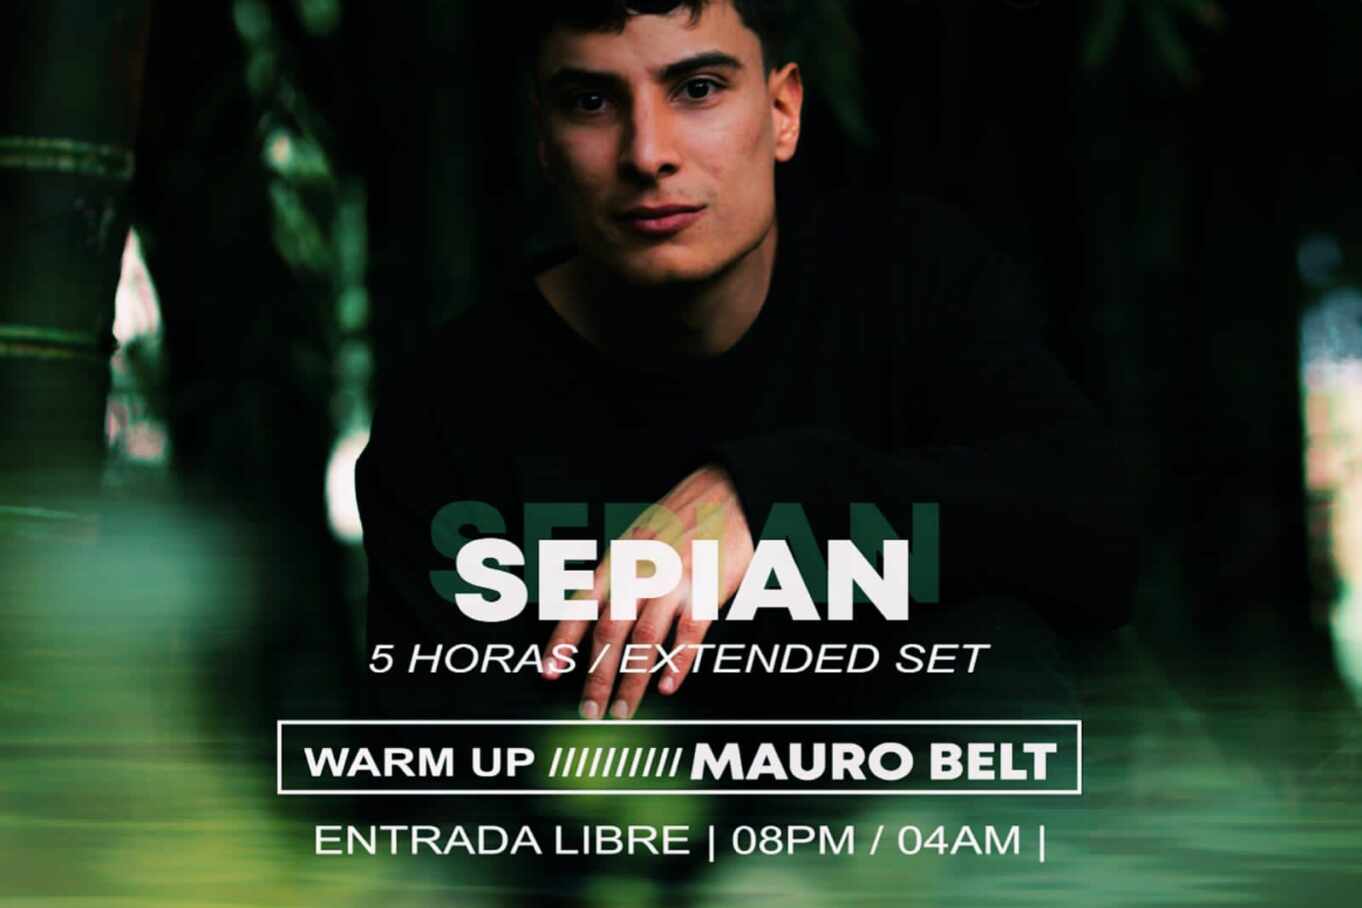 Support: Selecto by Terraza Club tiene como invitado a Sepian este jueves 6 de oct